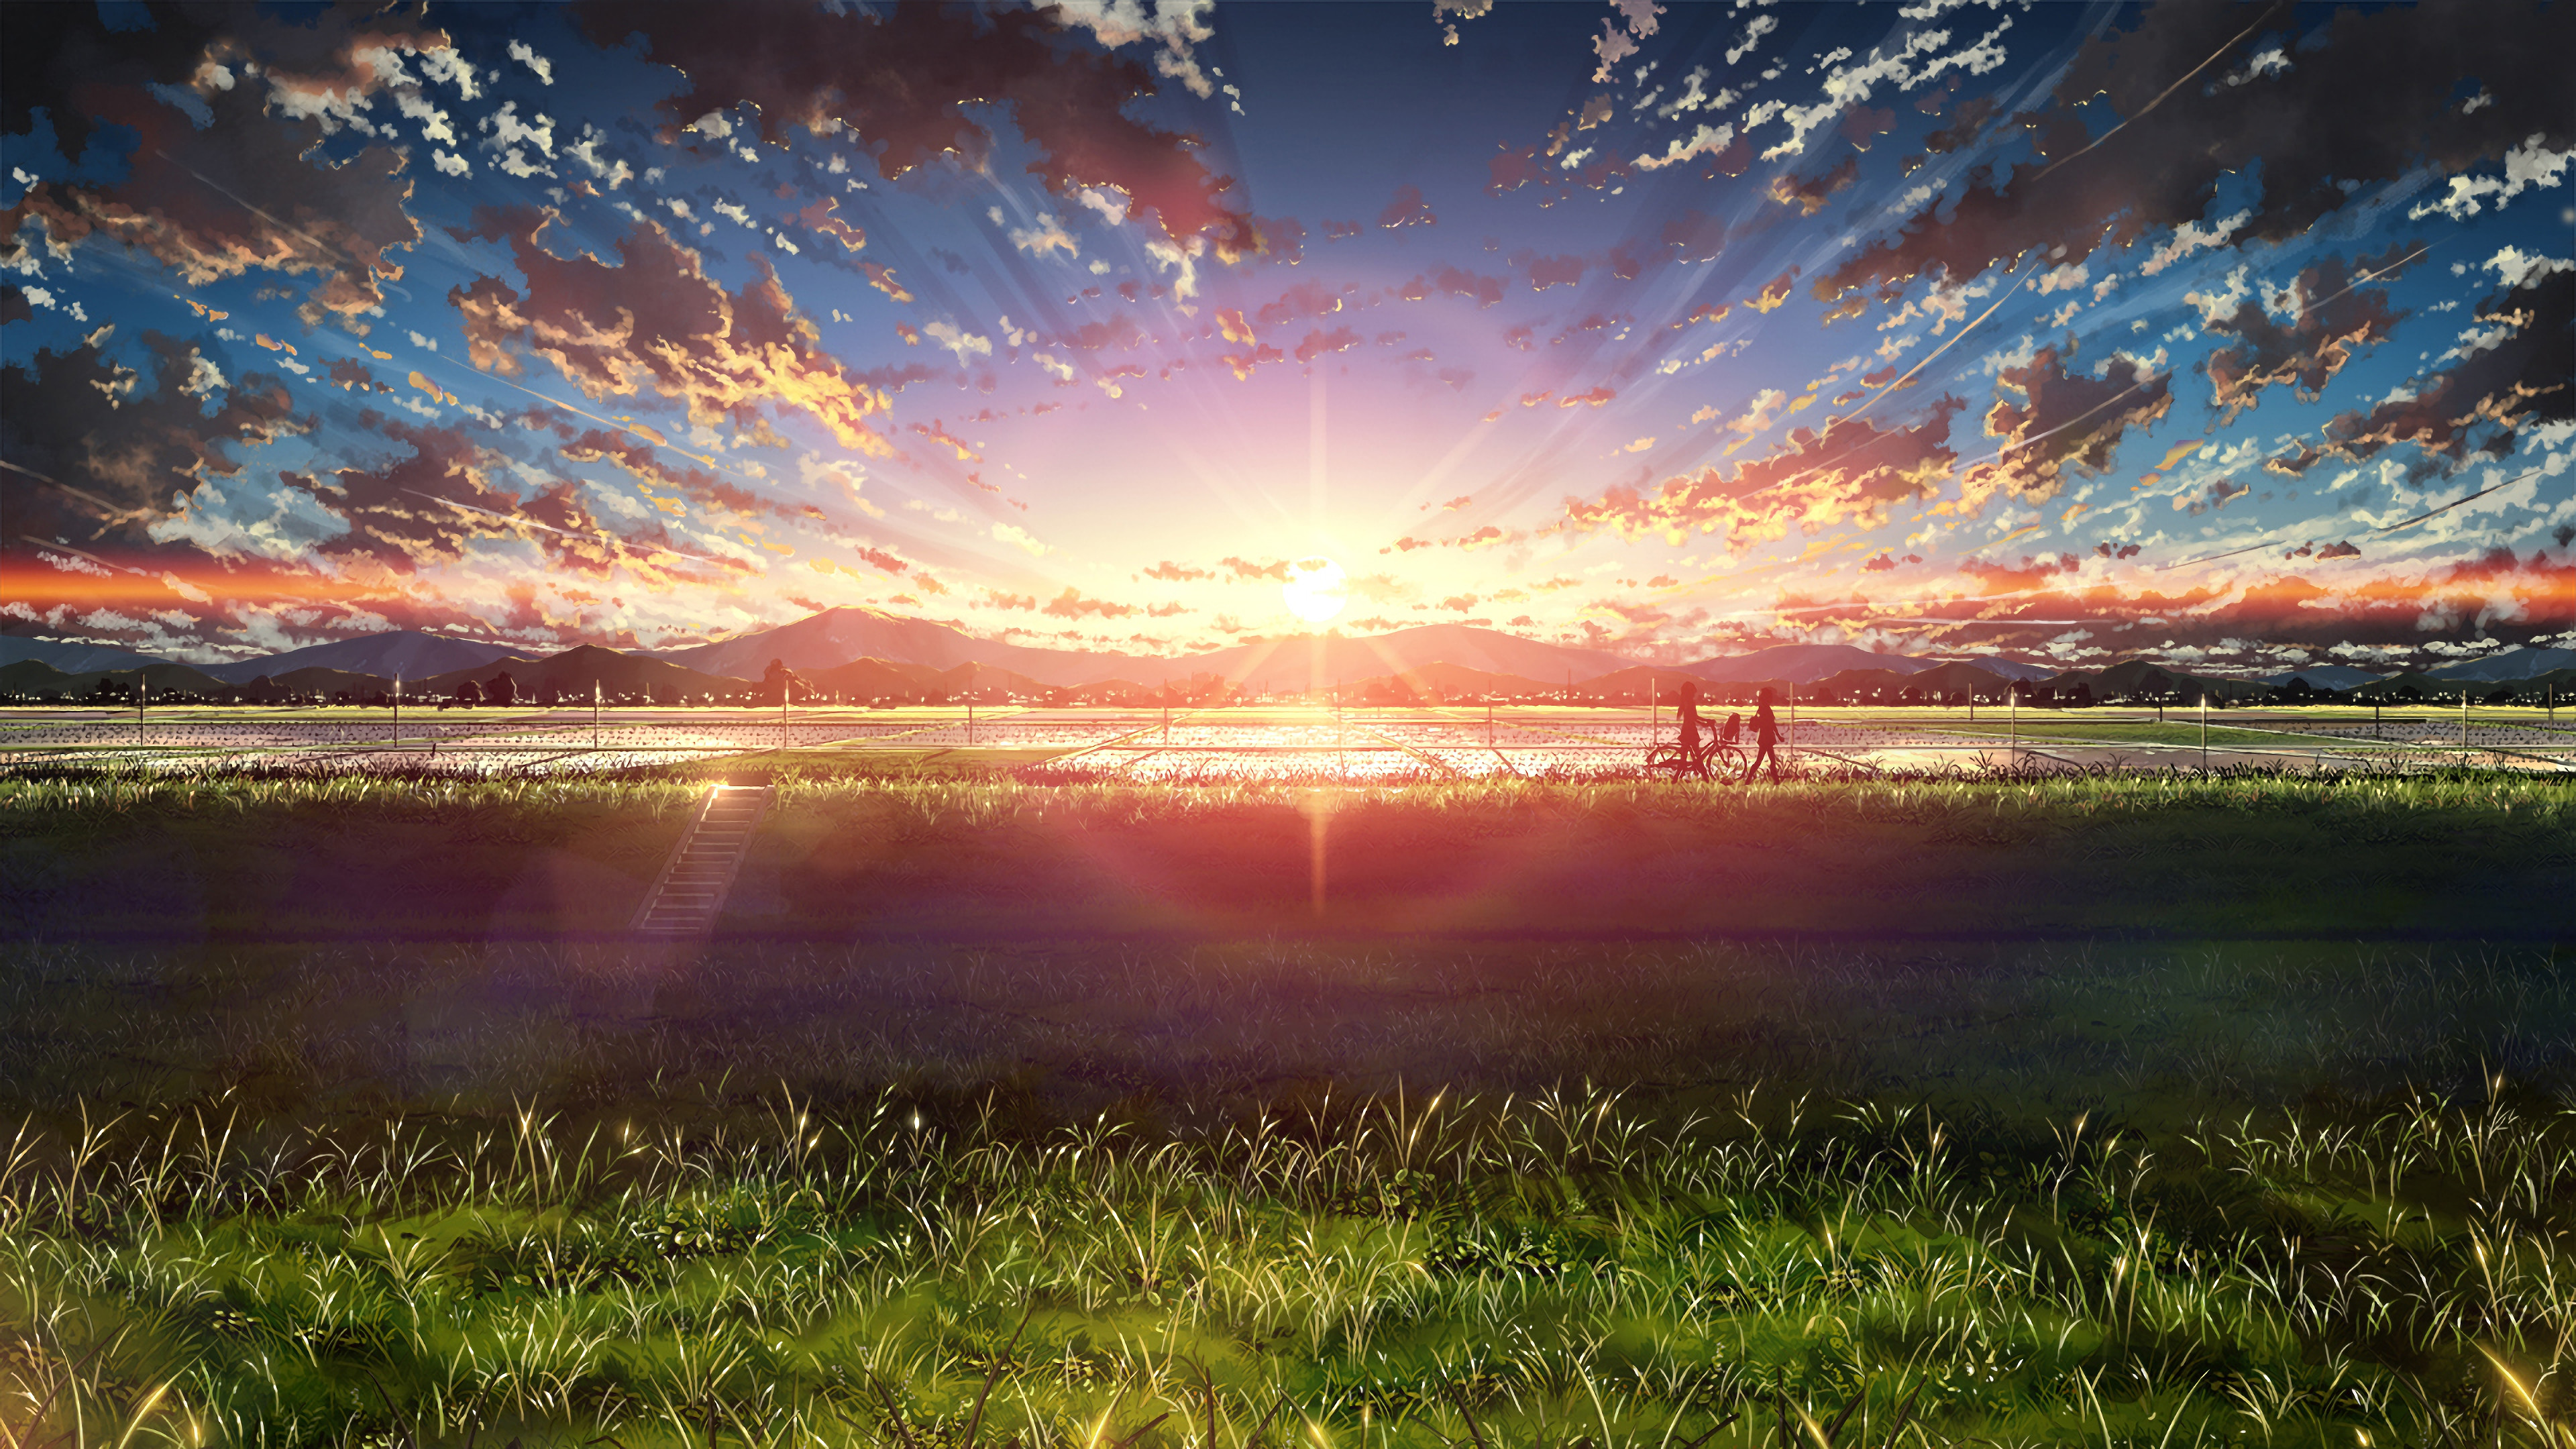 Anime, Beautiful, Sunrise, Landscape, Sky, Clouds, Scenery ...